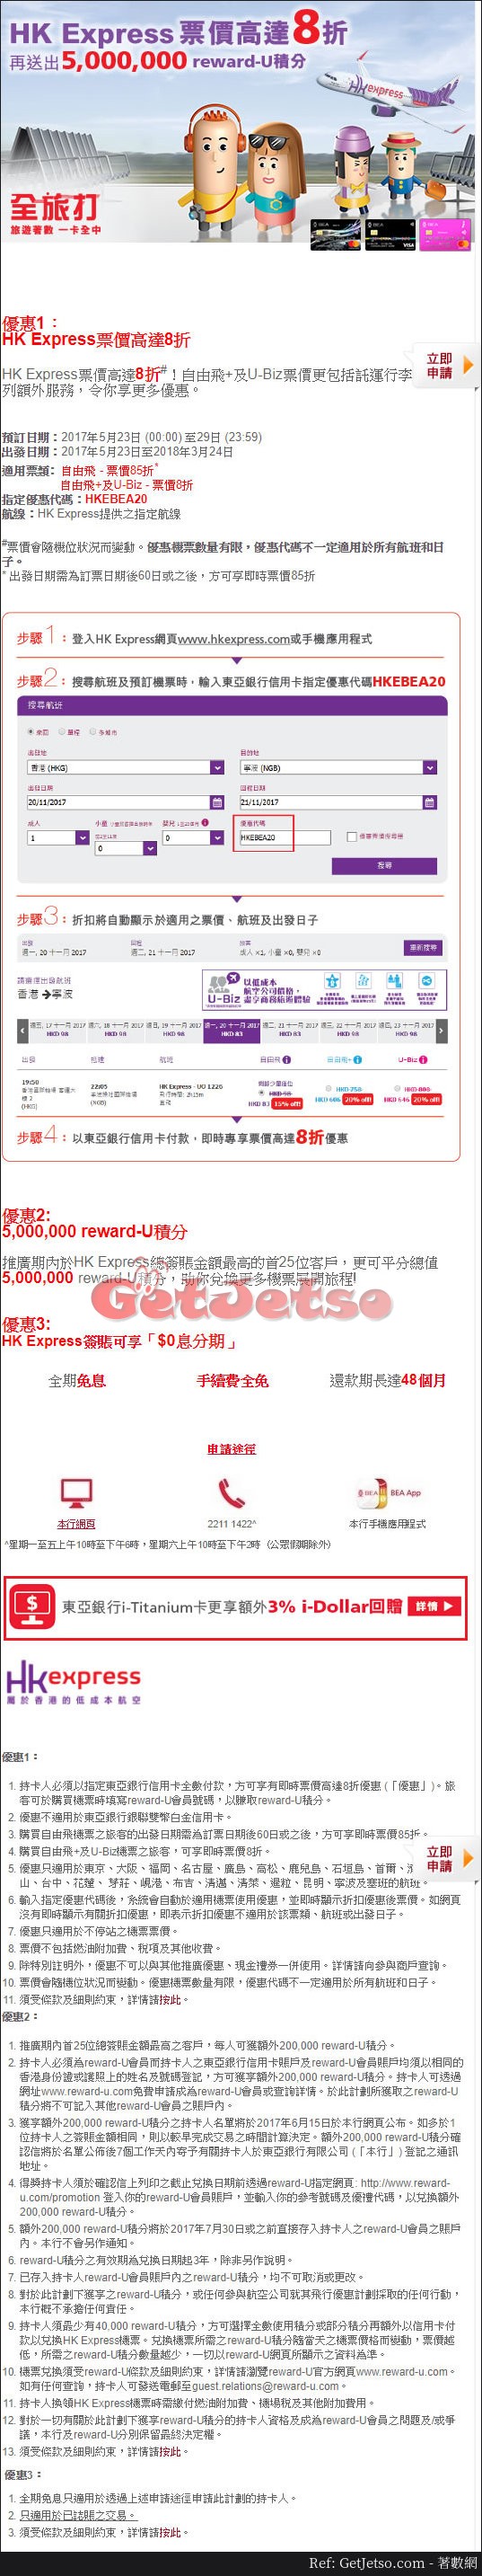 東亞信用卡享HK Express低至8折機票優惠(至17年5月29日)圖片1